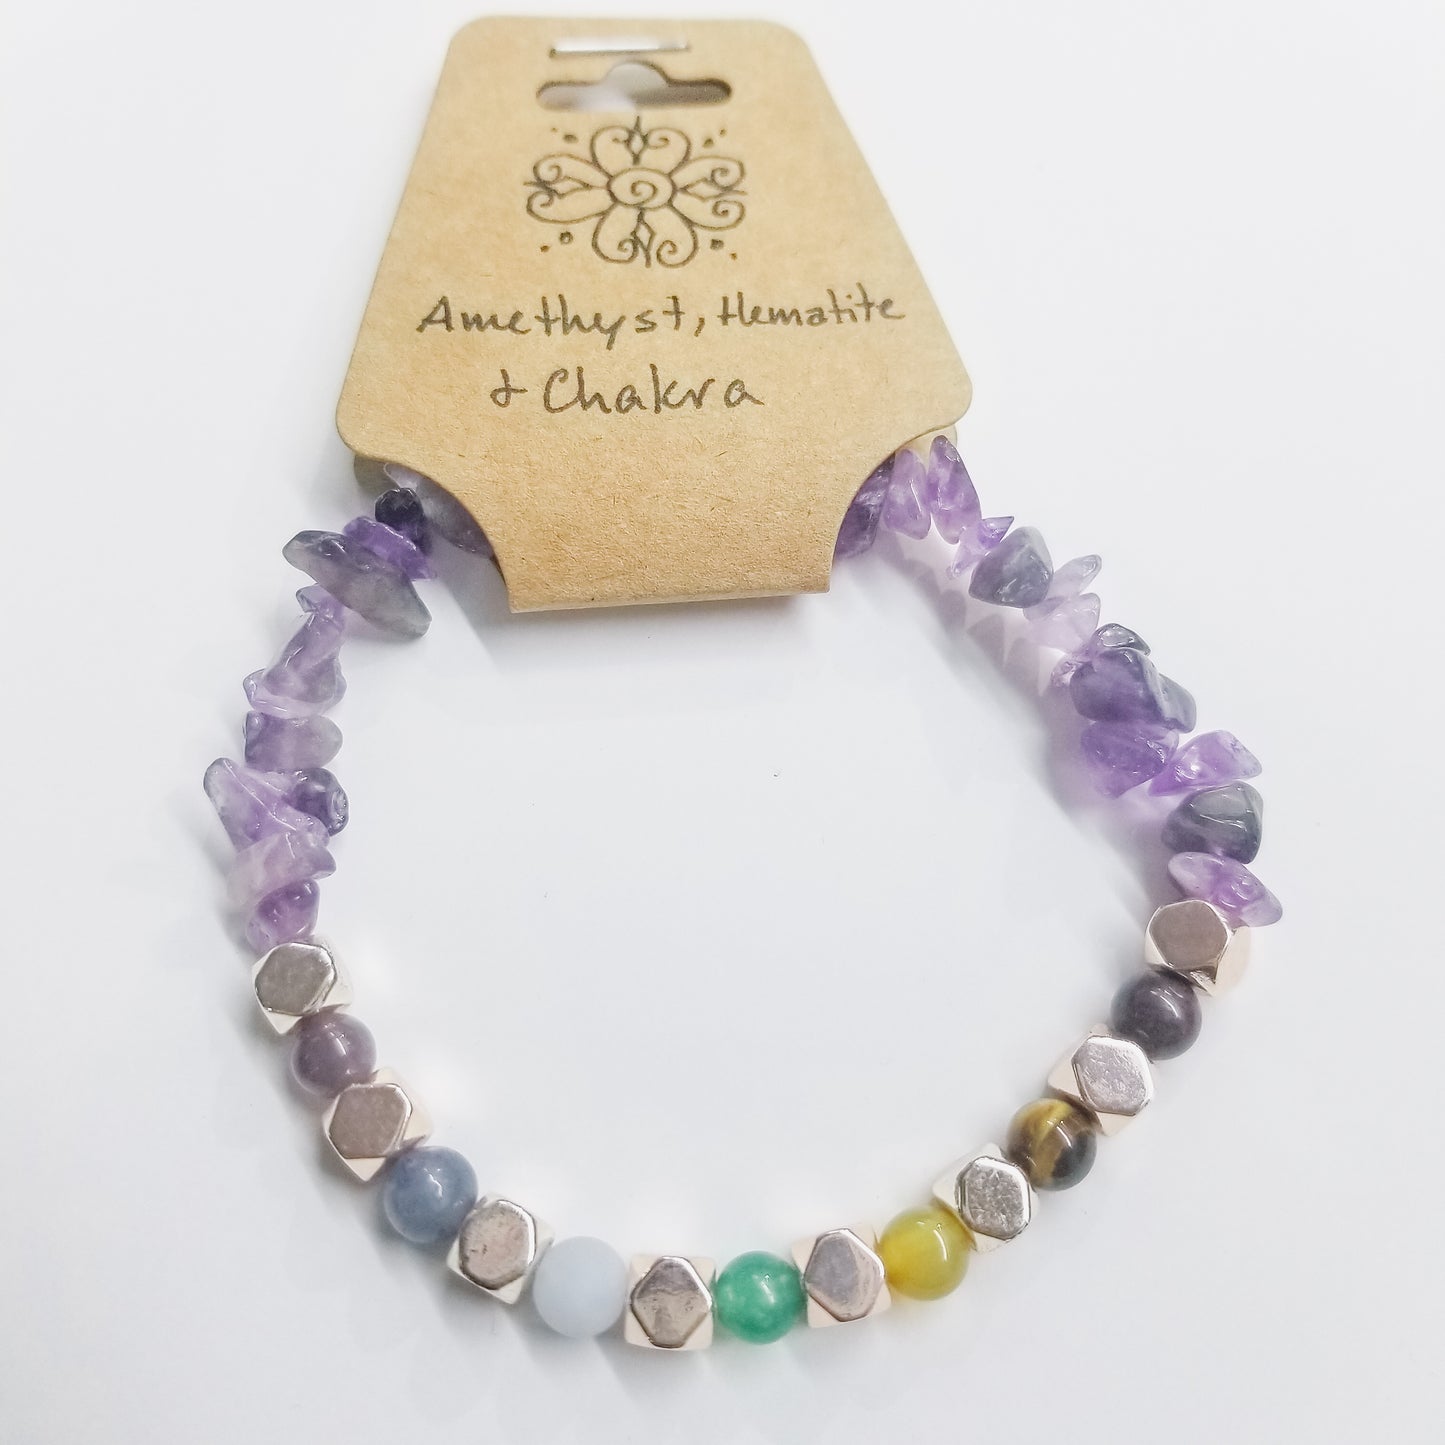 Amethyst, Hematite & Chakra Crystal Bracelet